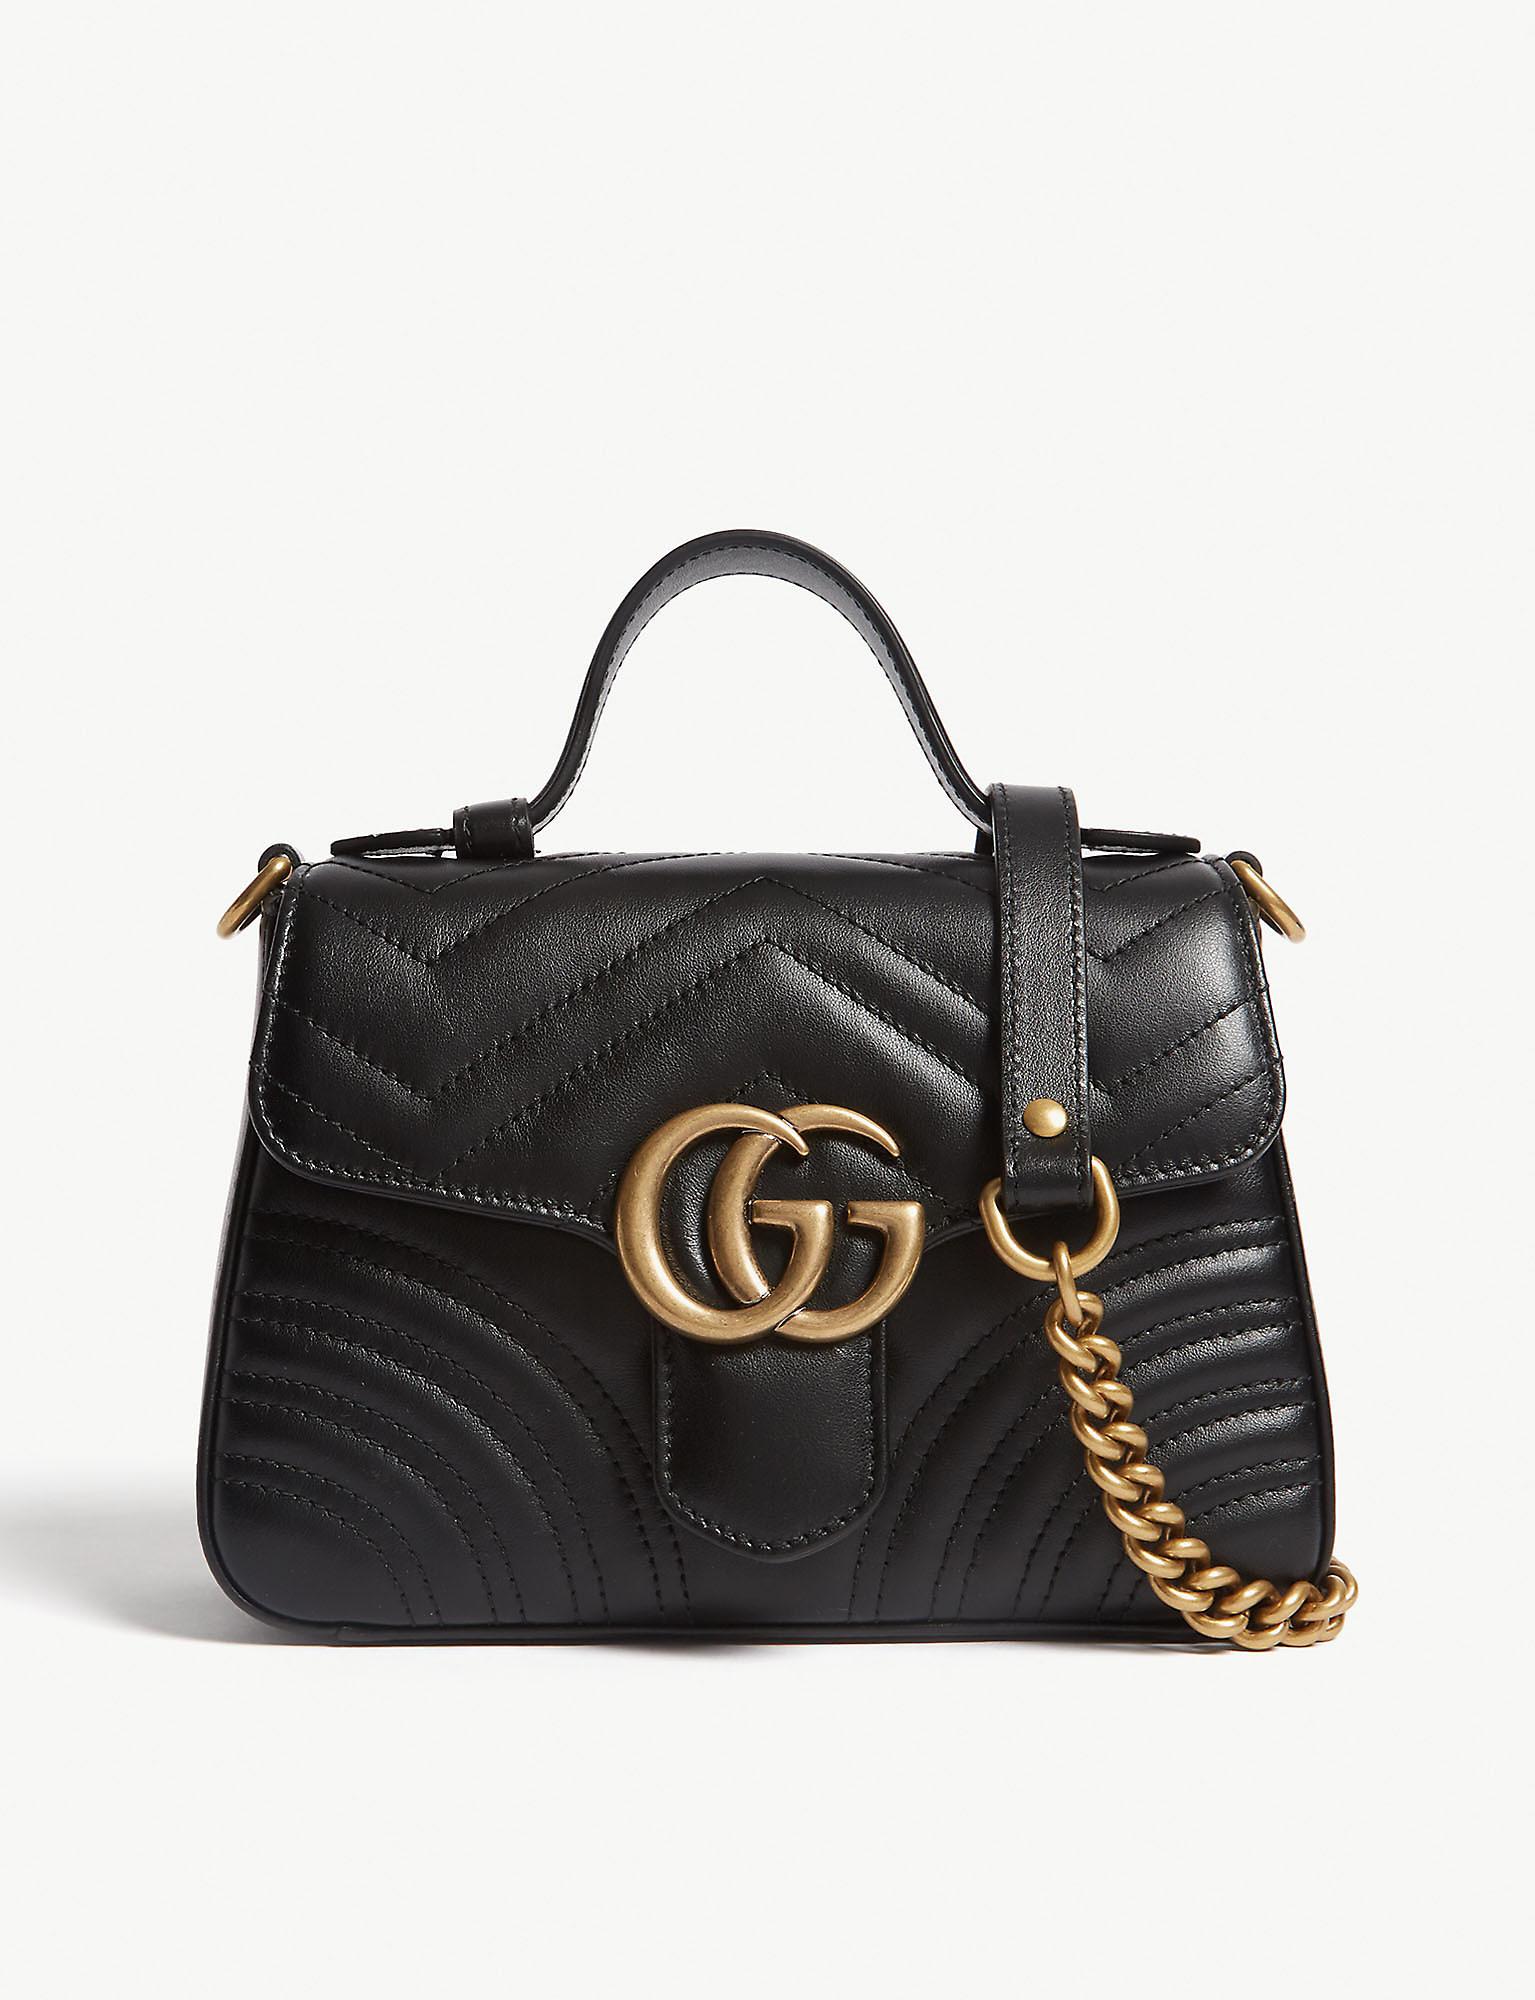 Gucci GG Marmont Mini Leather Shoulder Bag in Nero,Nero (Black) - Save 37% - Lyst